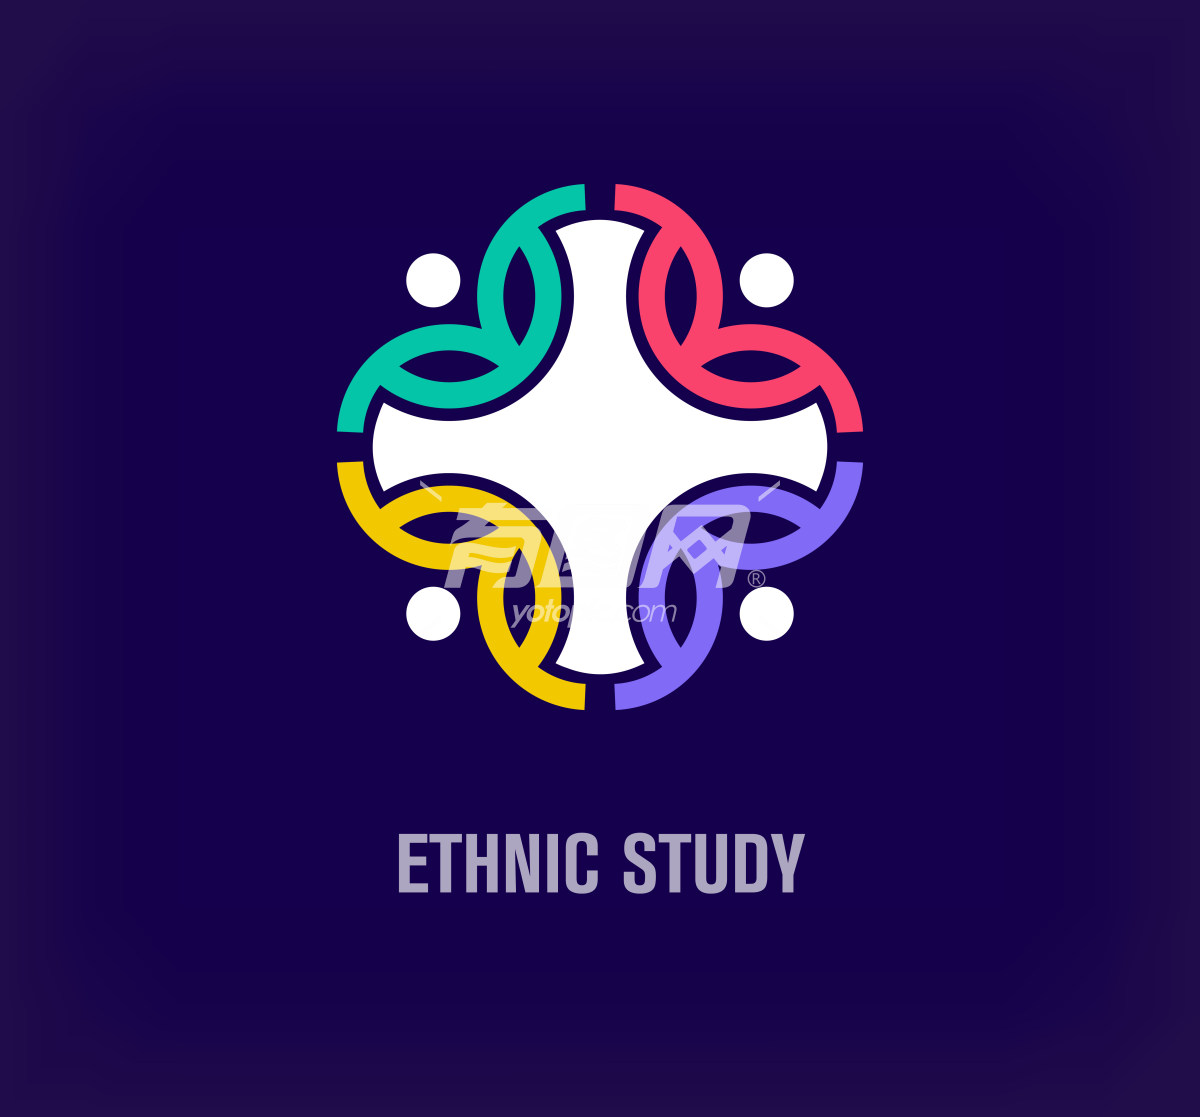 Ethnic Study主题标志设计